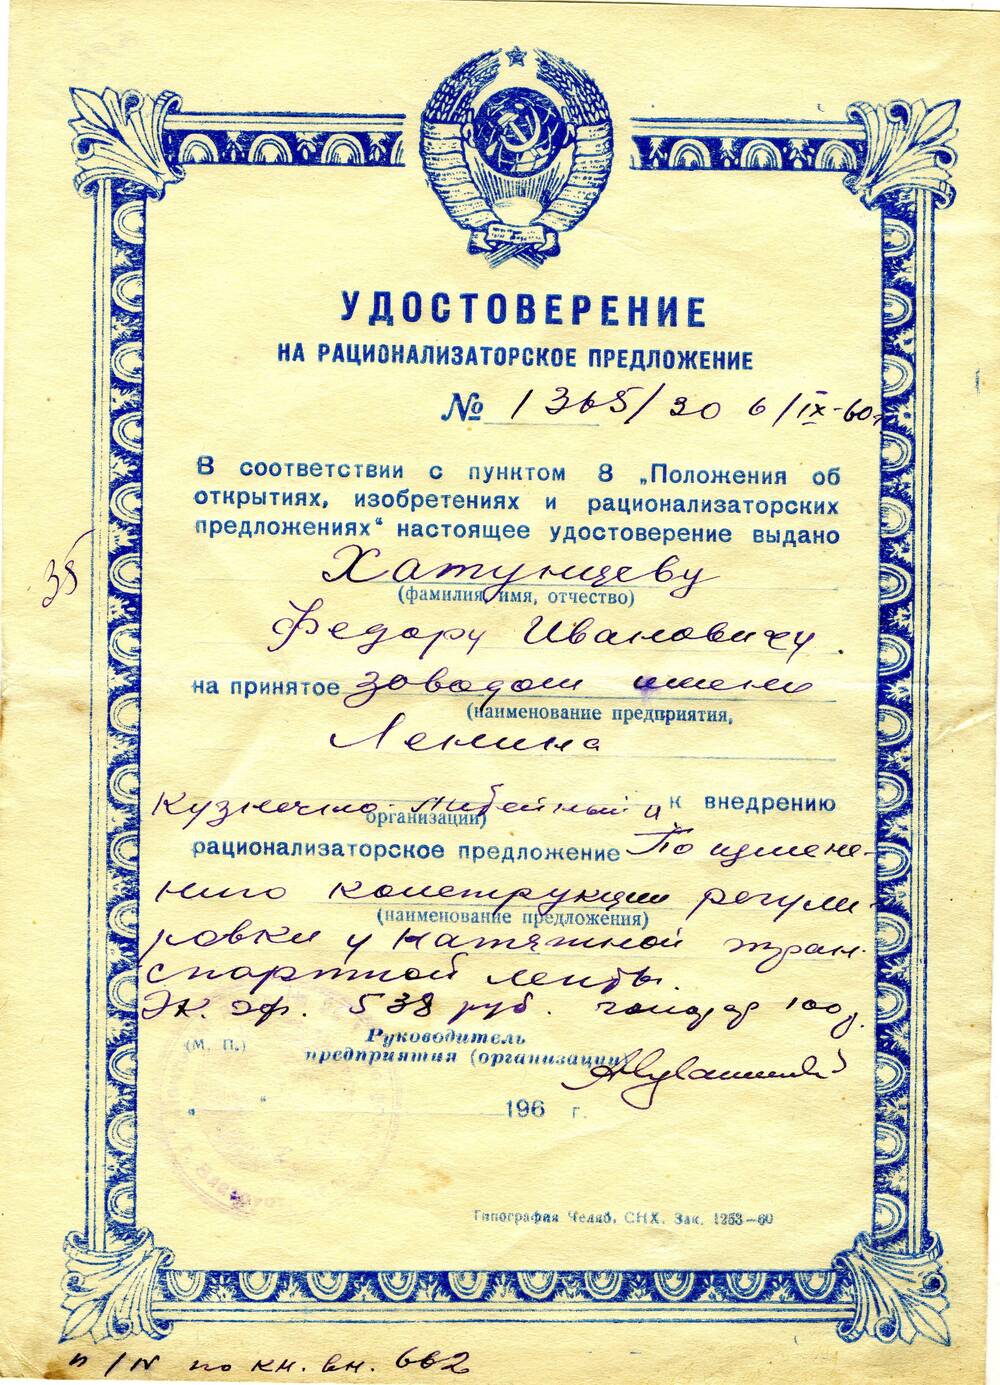 Удостоверение на рационализаторское предложение №1365/30 Хатунцева Федора Ивановича. 1960 г.